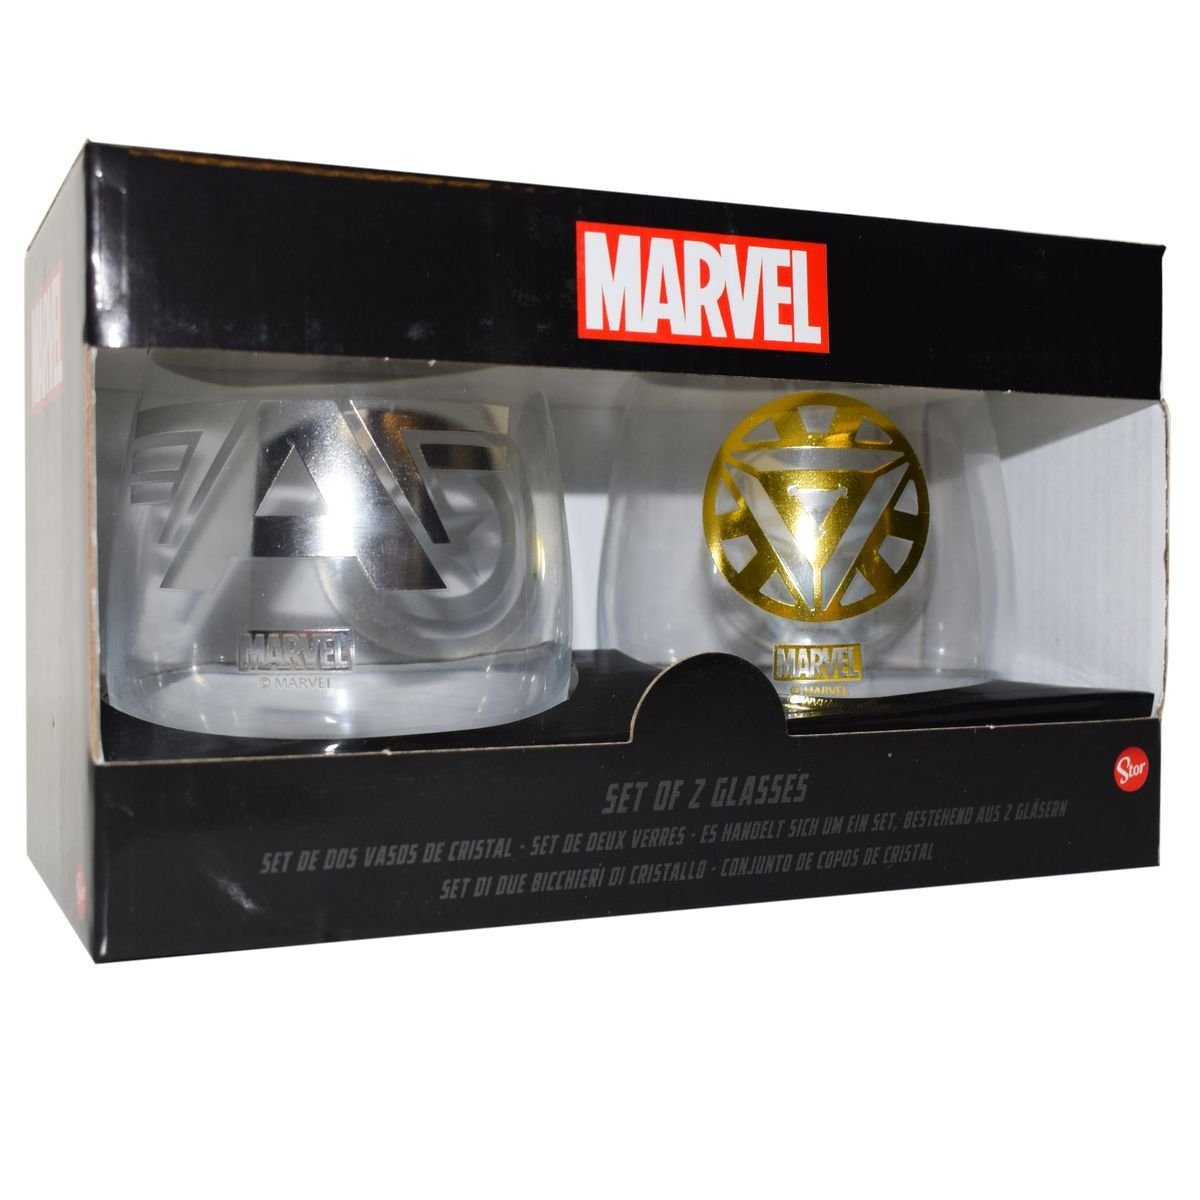 Set Geschenkkarton Metallic Marvel im authentisches Glas Stor Trinkgläser Glas, 2 Design Gläser, Avengers